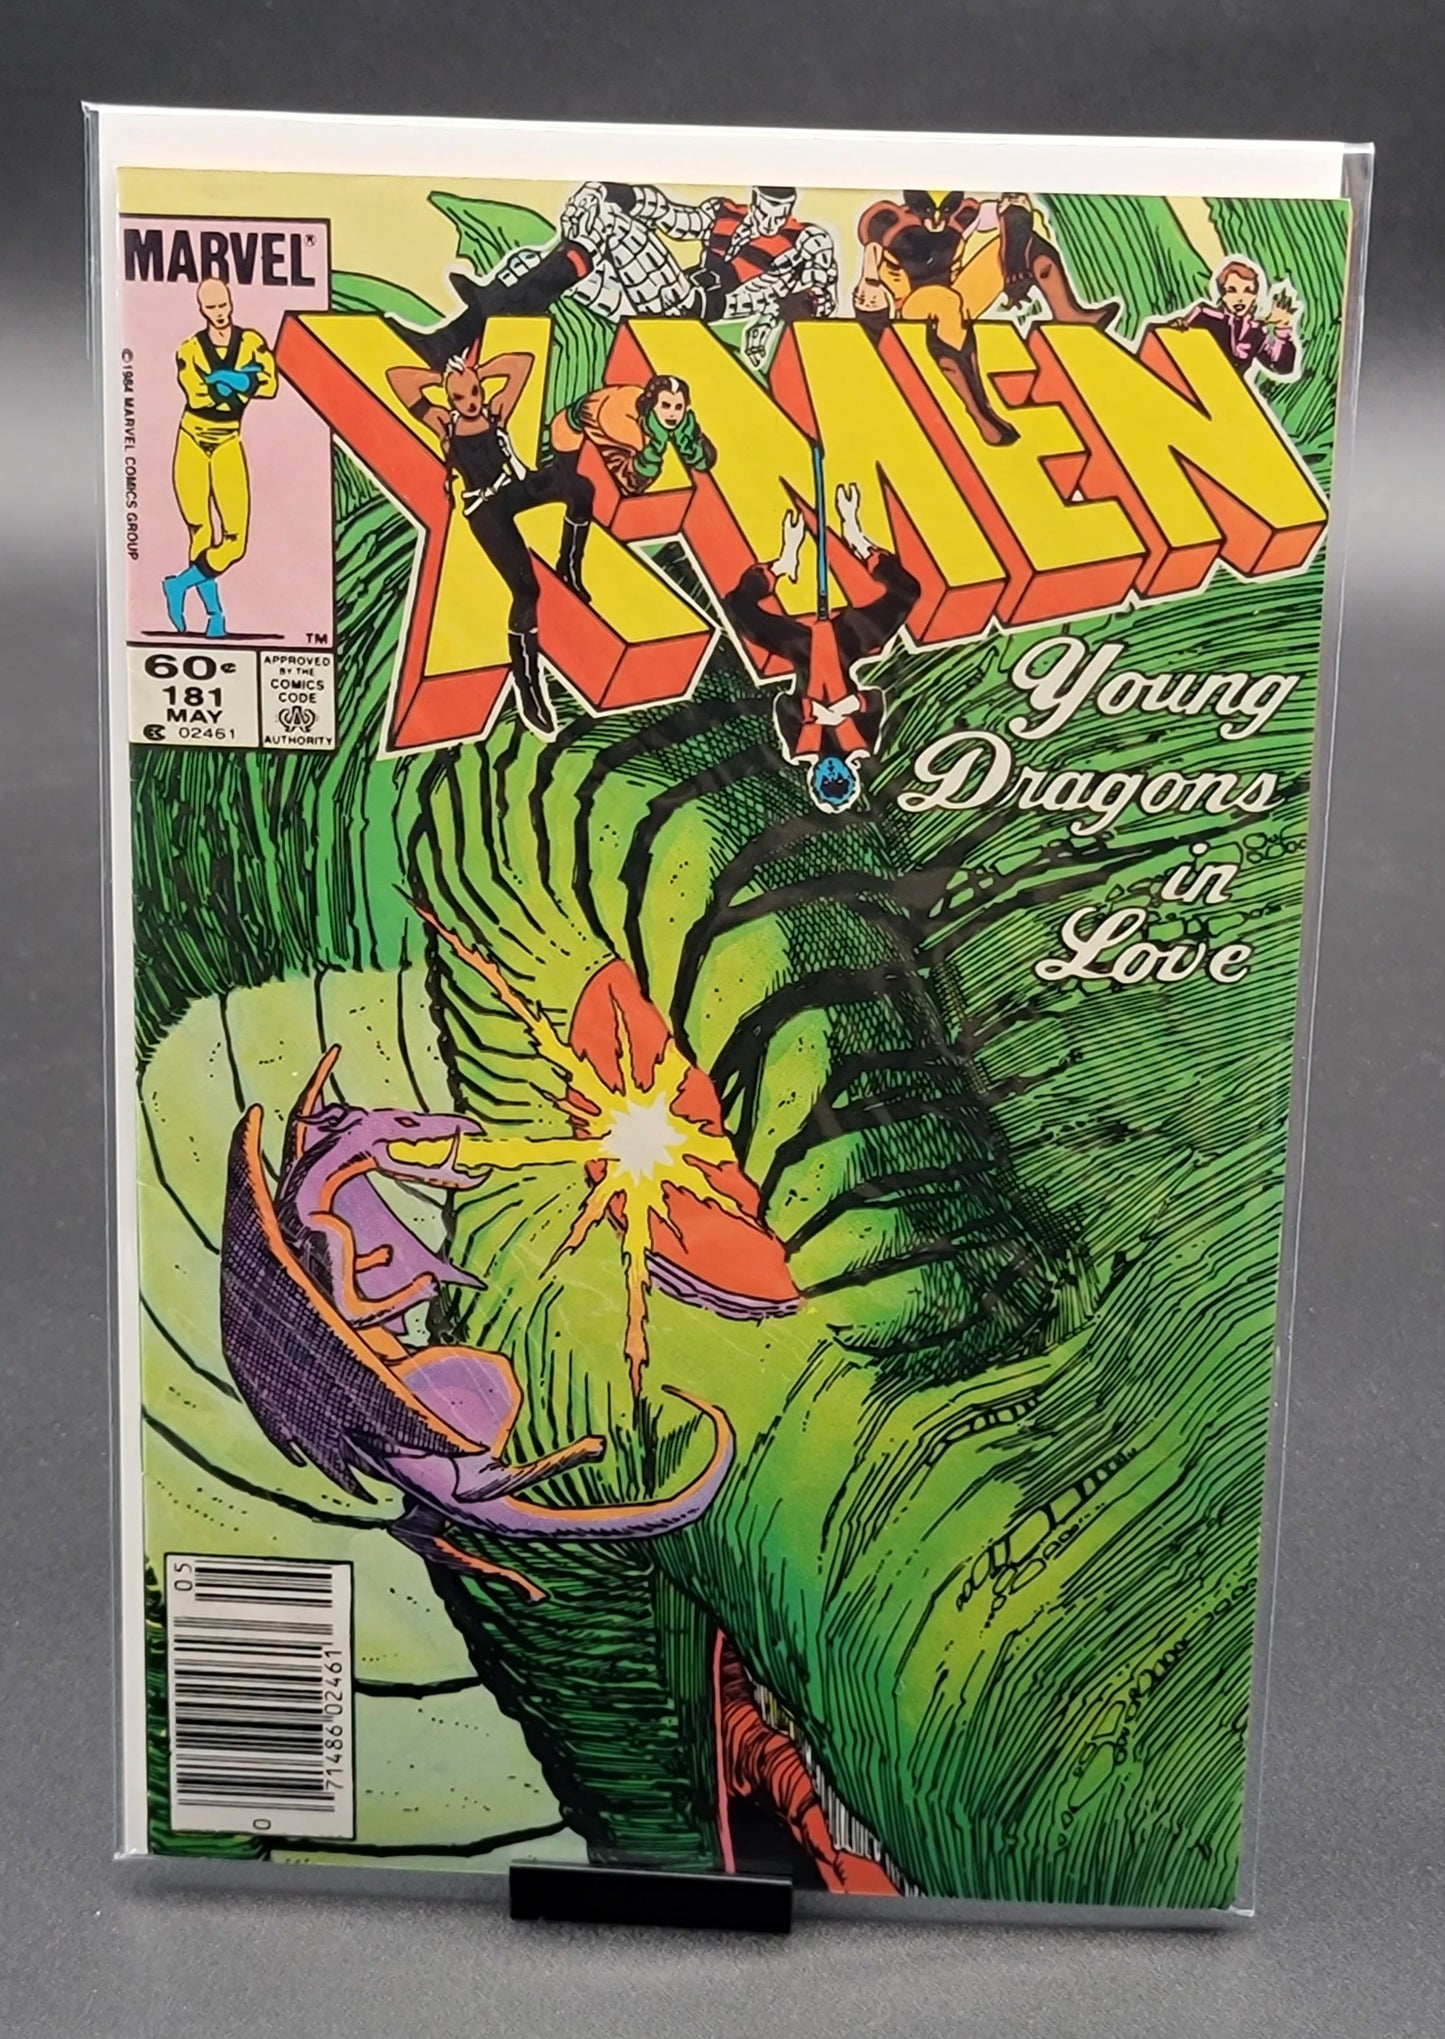 The Uncanny X-Men #181 1984